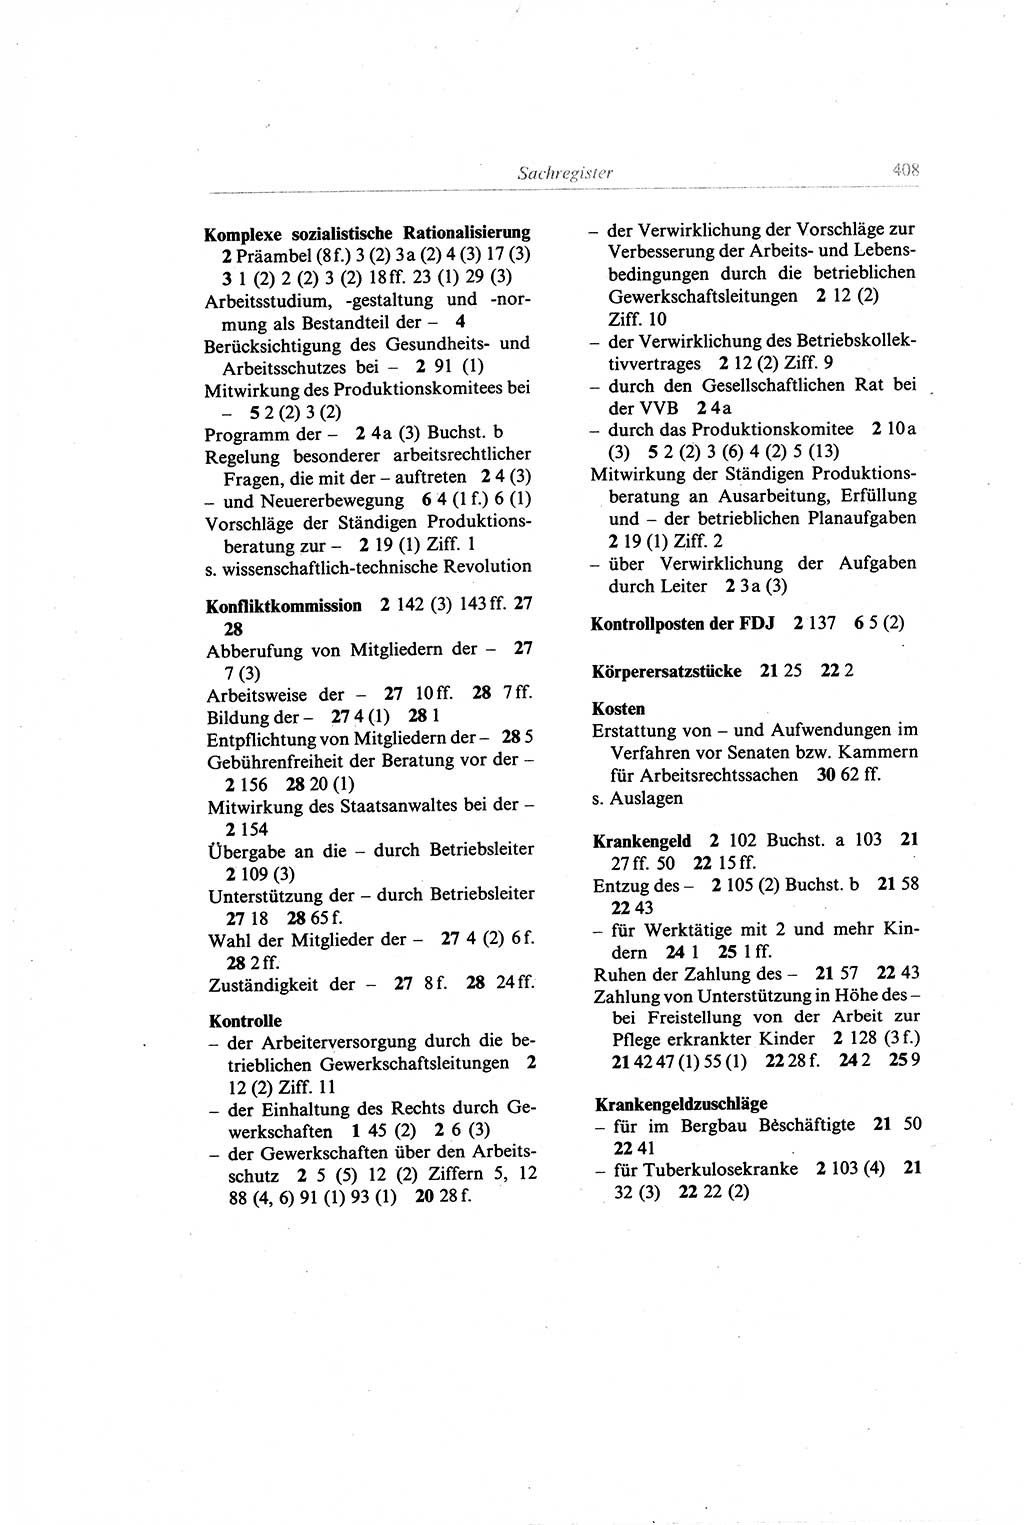 Gesetzbuch der Arbeit (GBA) und andere ausgewählte rechtliche Bestimmungen [Deutsche Demokratische Republik (DDR)] 1968, Seite 408 (GBA DDR 1968, S. 408)